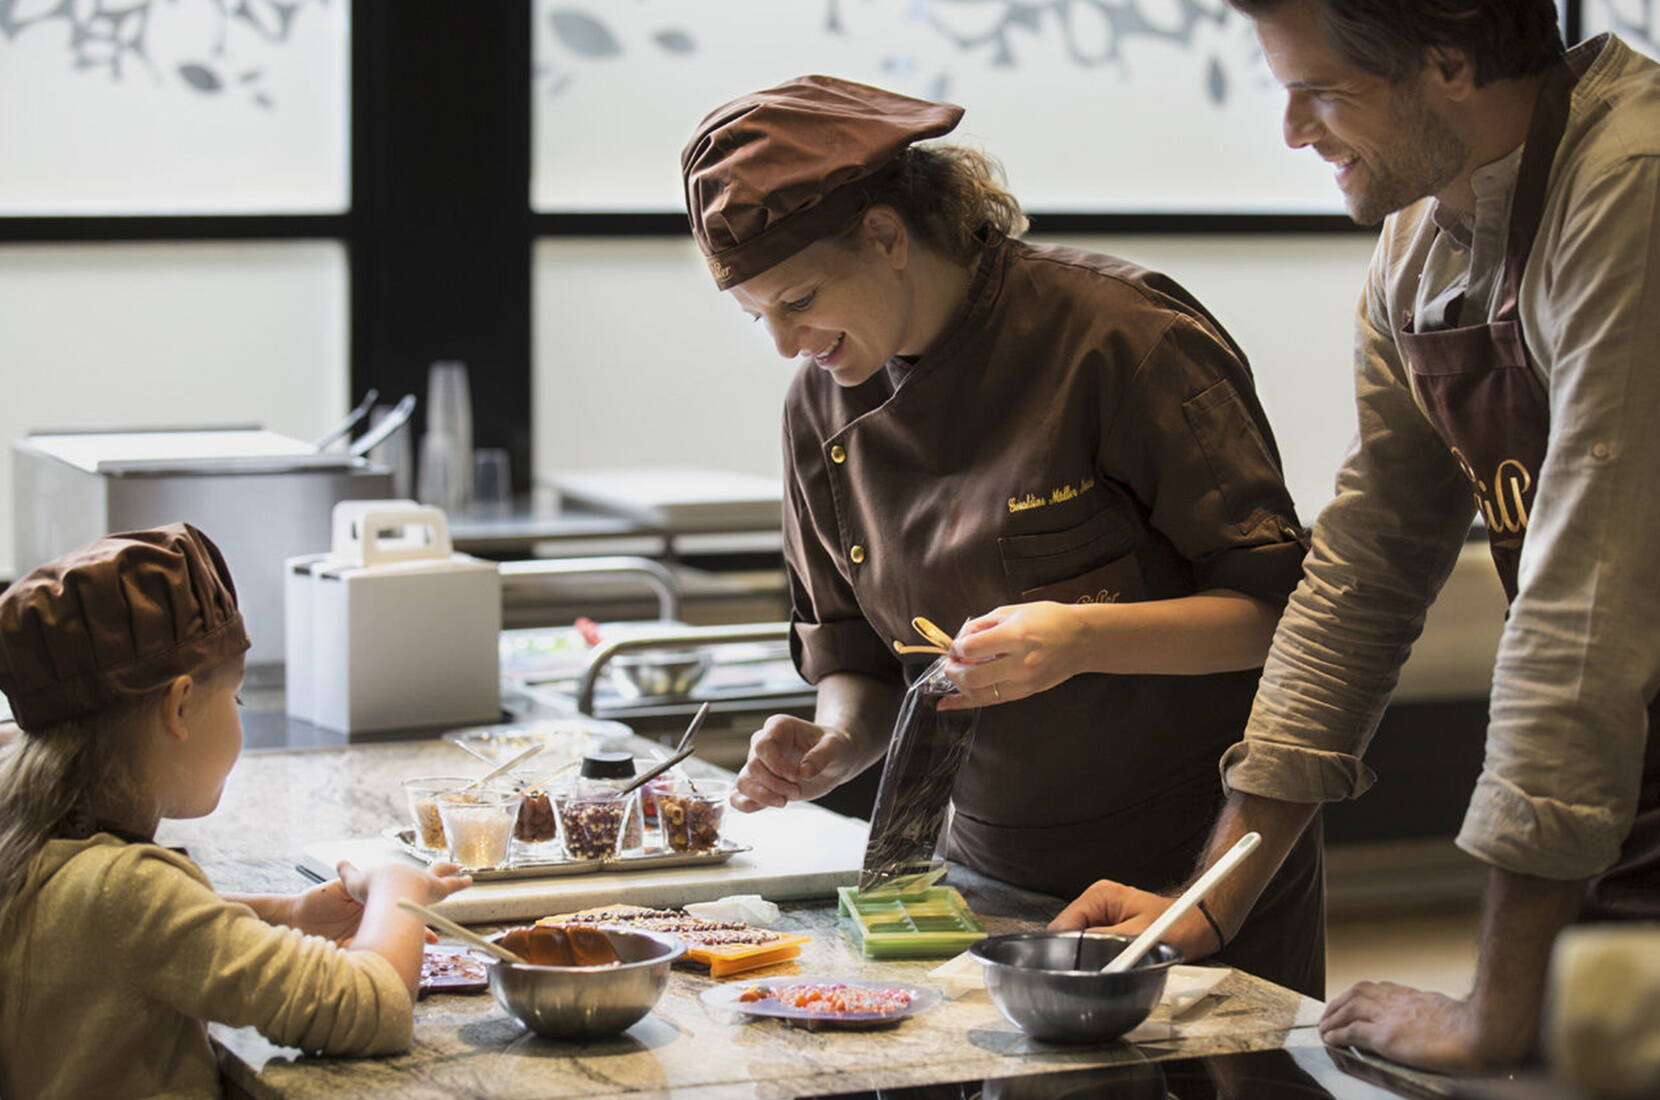 Erlebe die süsse Verführung der Schokolade bei einem Besuch in der Maison Cailler. Die interaktive Führung durch die Cailler Fabrik nimmt dich mit auf eine einstündige Reise durch die Geschichte der Schokolade – von den Azteken bis zu den aktuellen Innovationen.